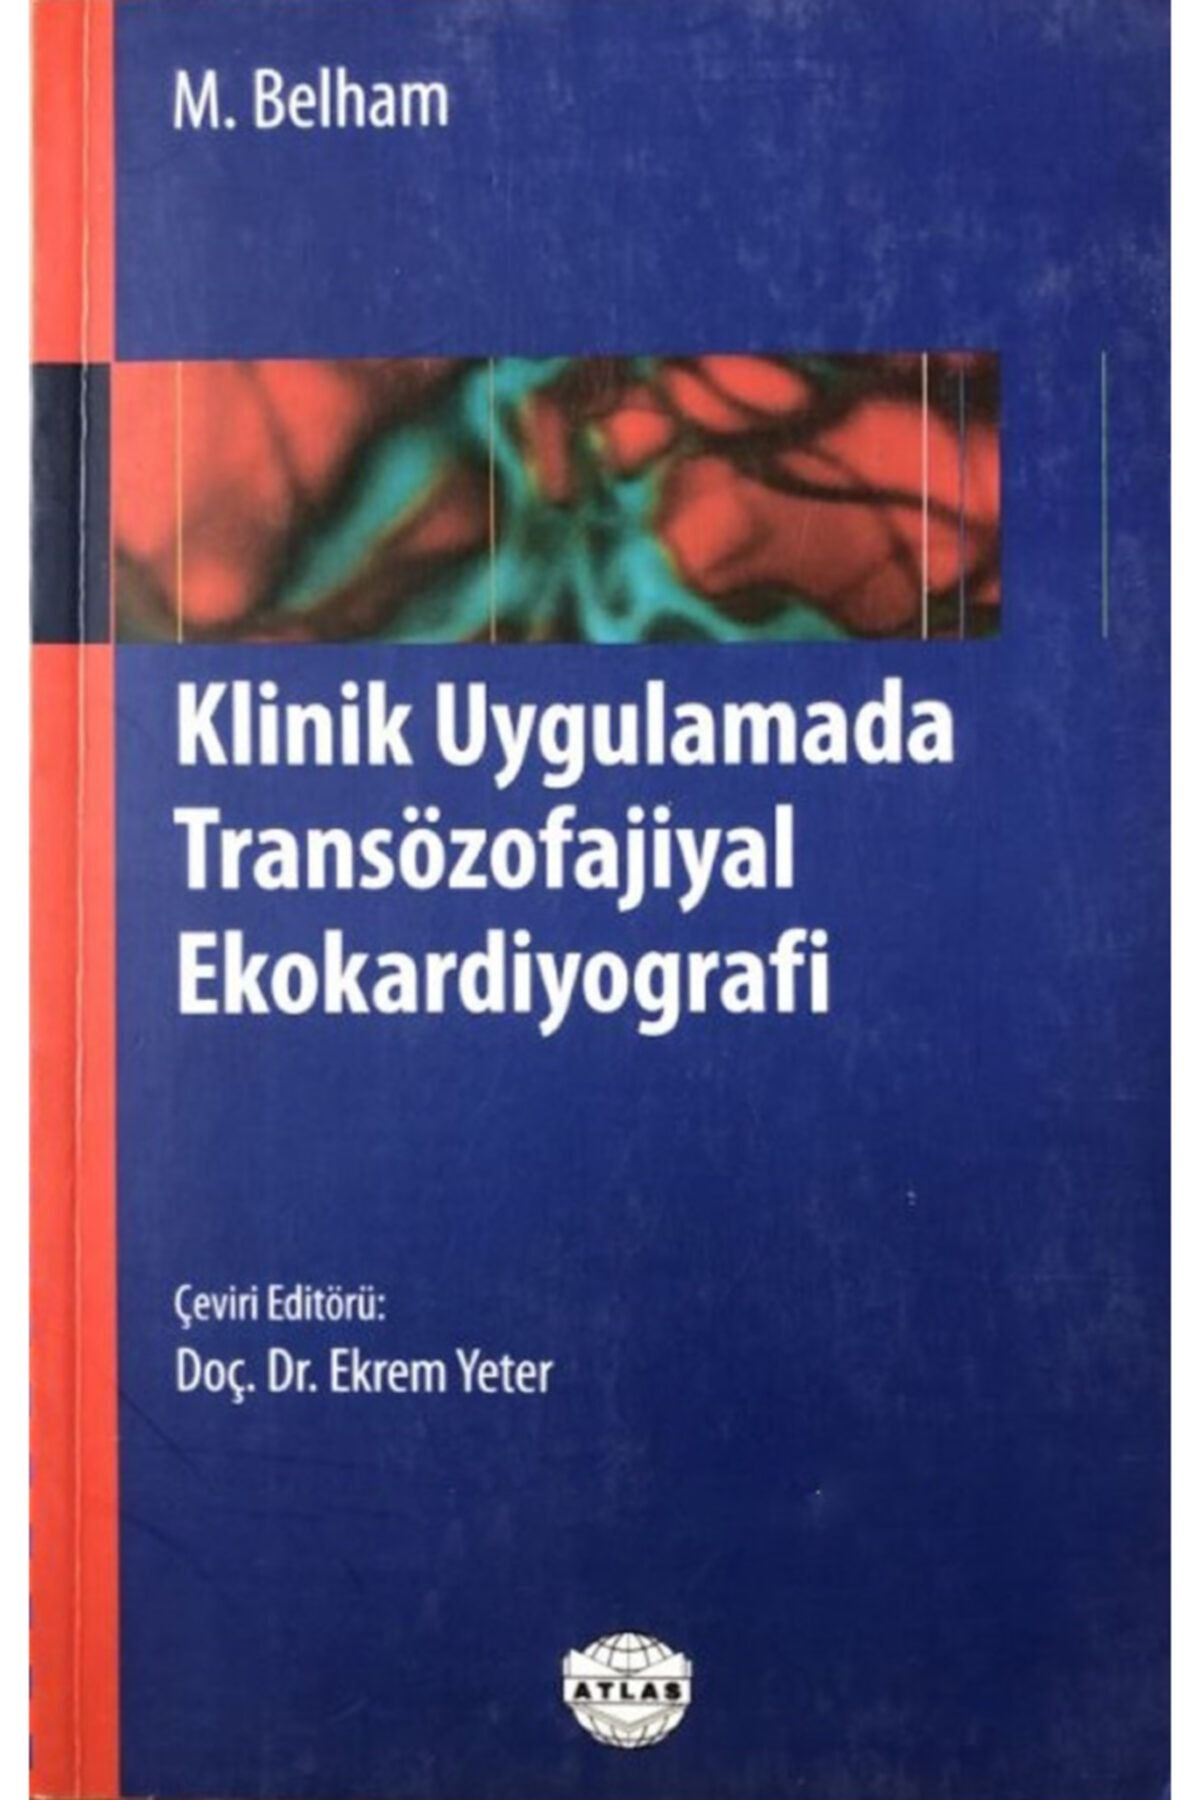 Atlas Kitap Klinik Uygulamada Transözofajiyal Ekokardiyografi, M. Belham, Çeviri Editörü Ekrem Yeter